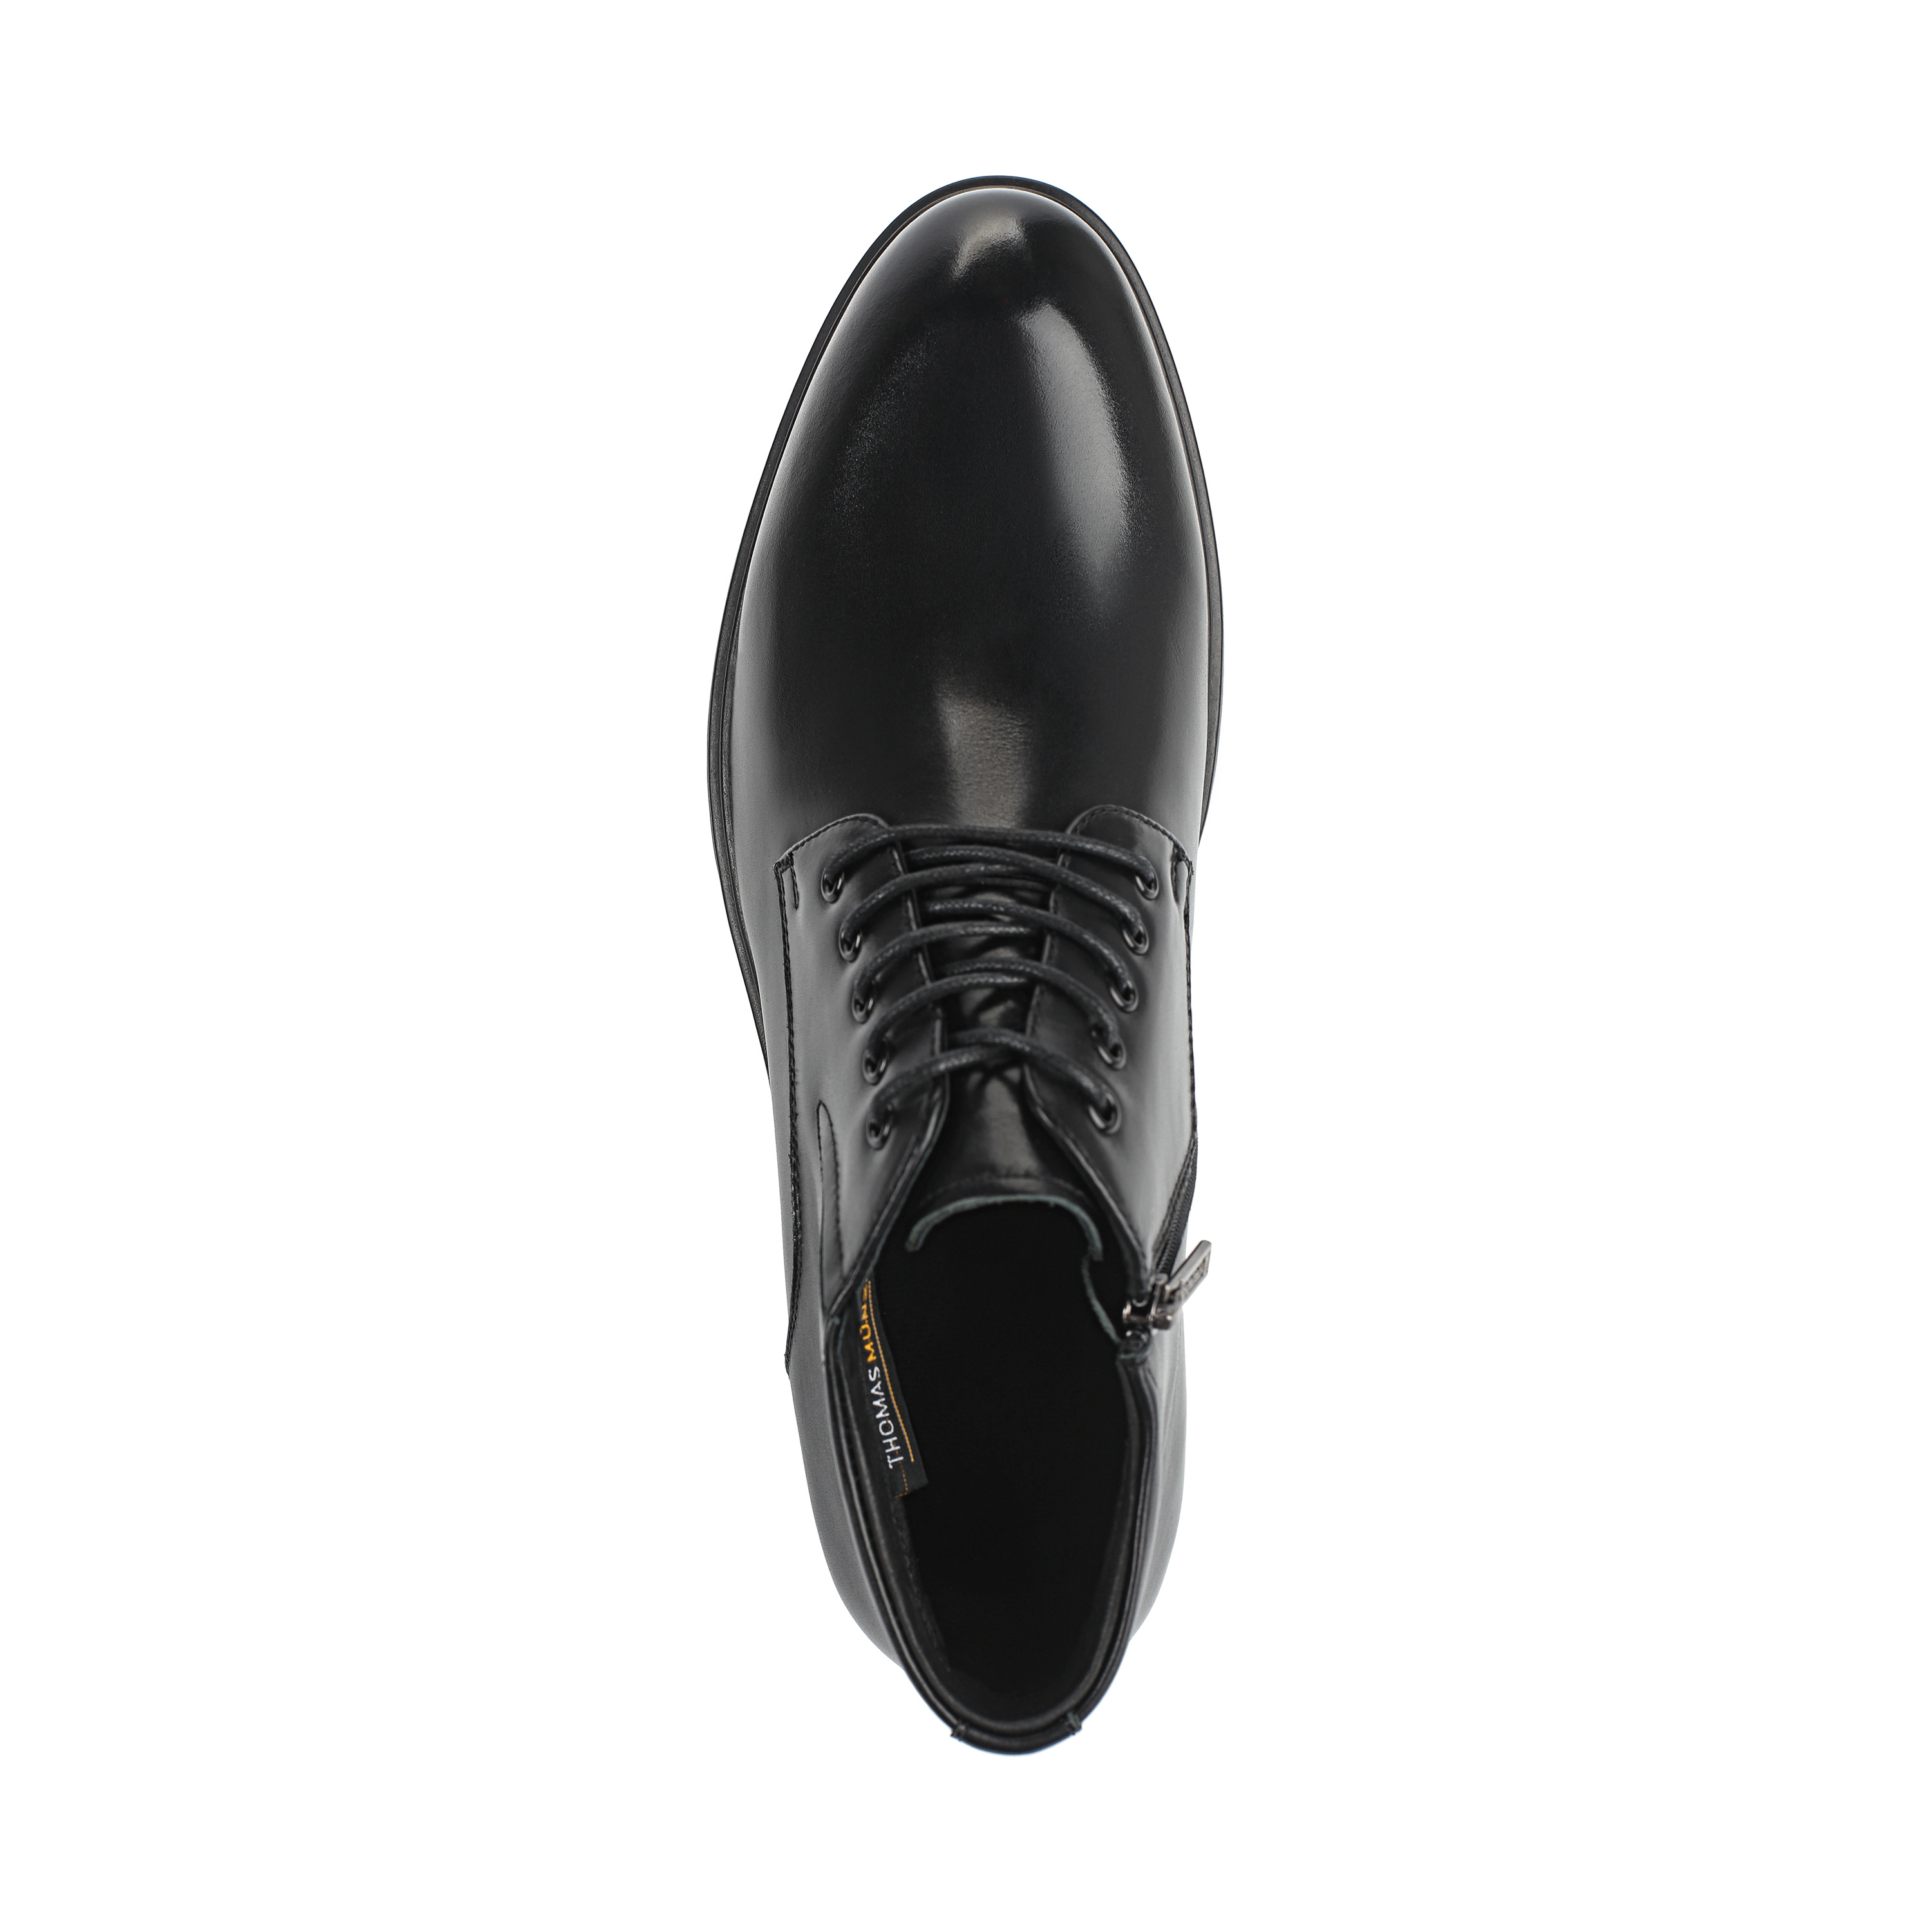 Ботинки Thomas Munz 73-080B-2101, цвет черный, размер 40 дерби - фото 5